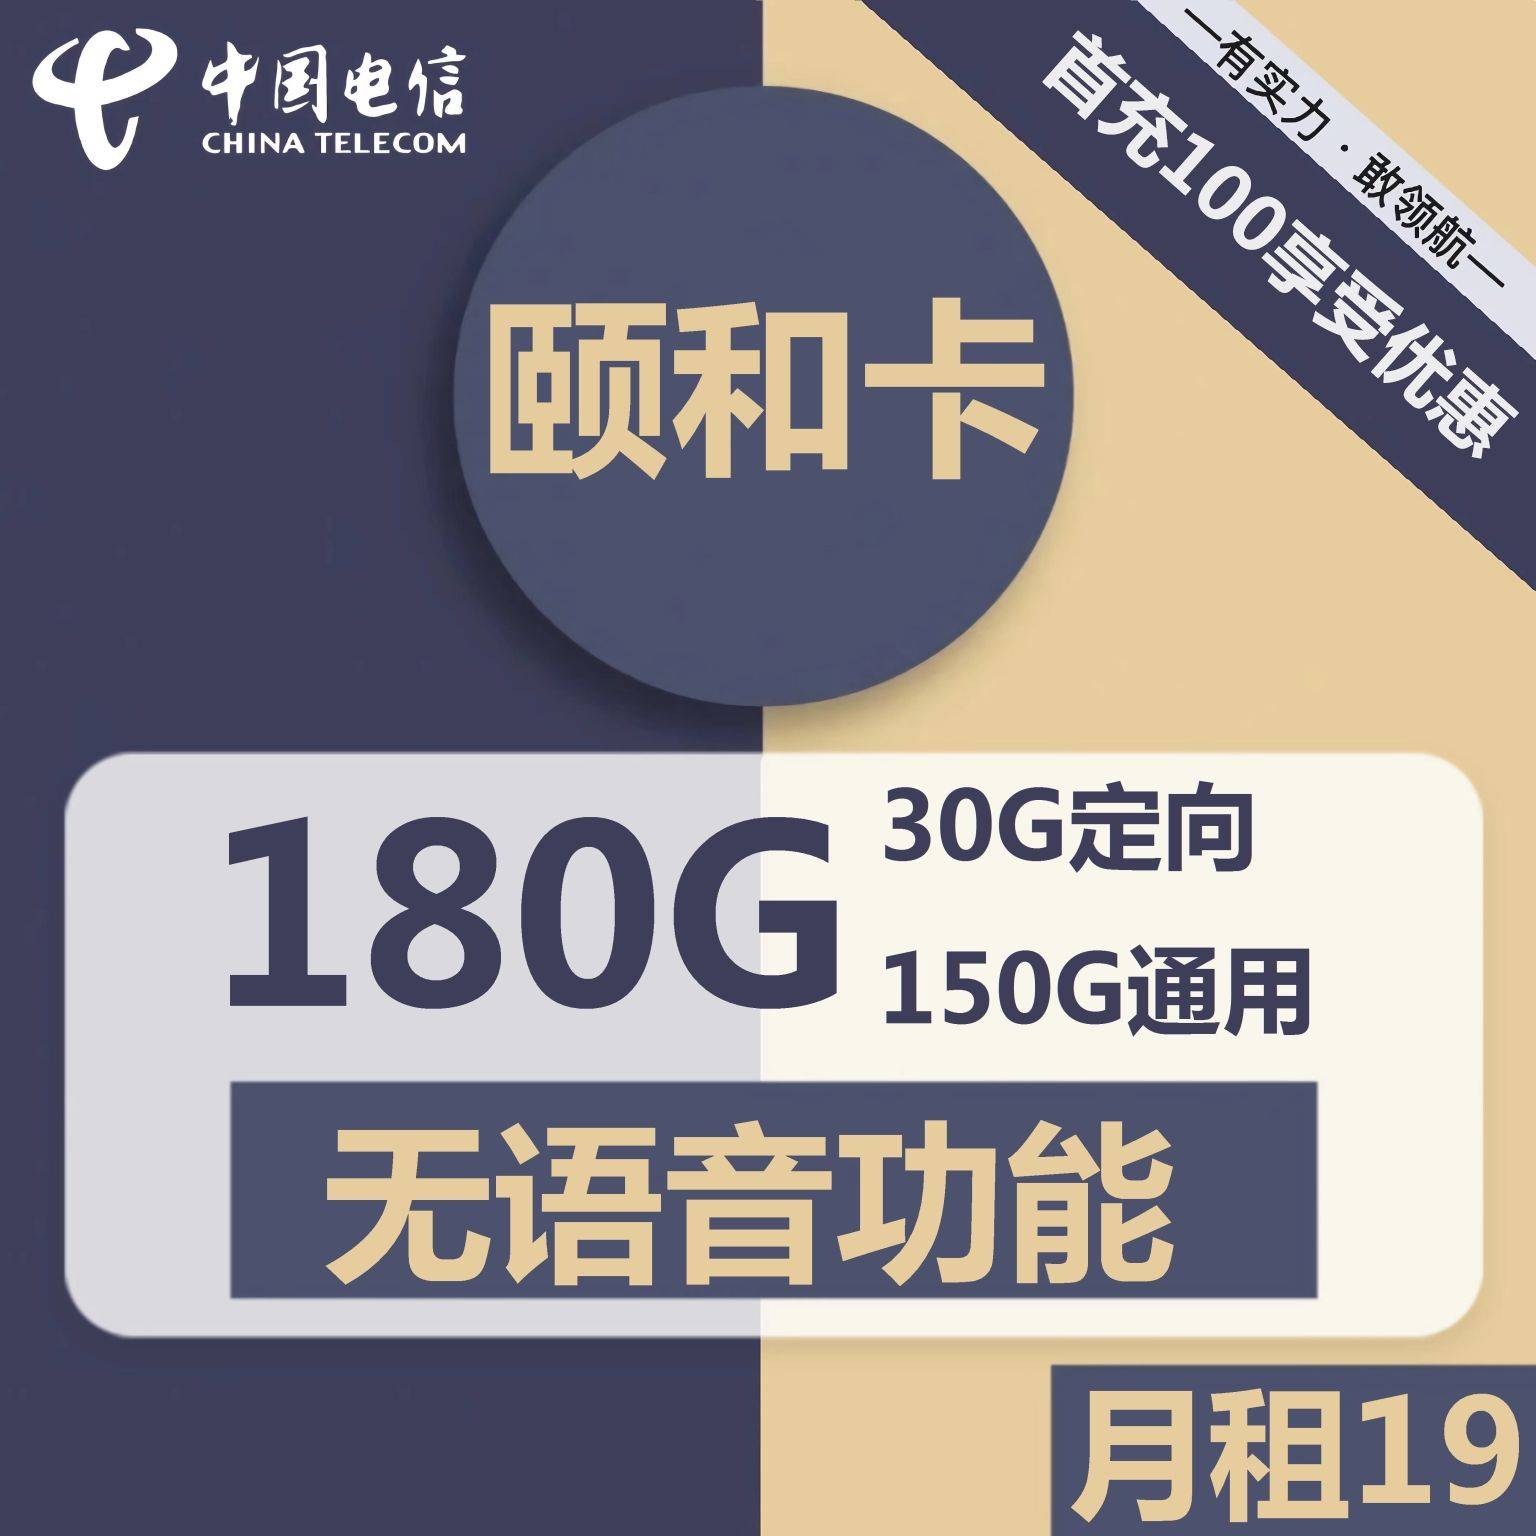 北京电信颐和卡19元包150G通用+30G定向+无语音功能